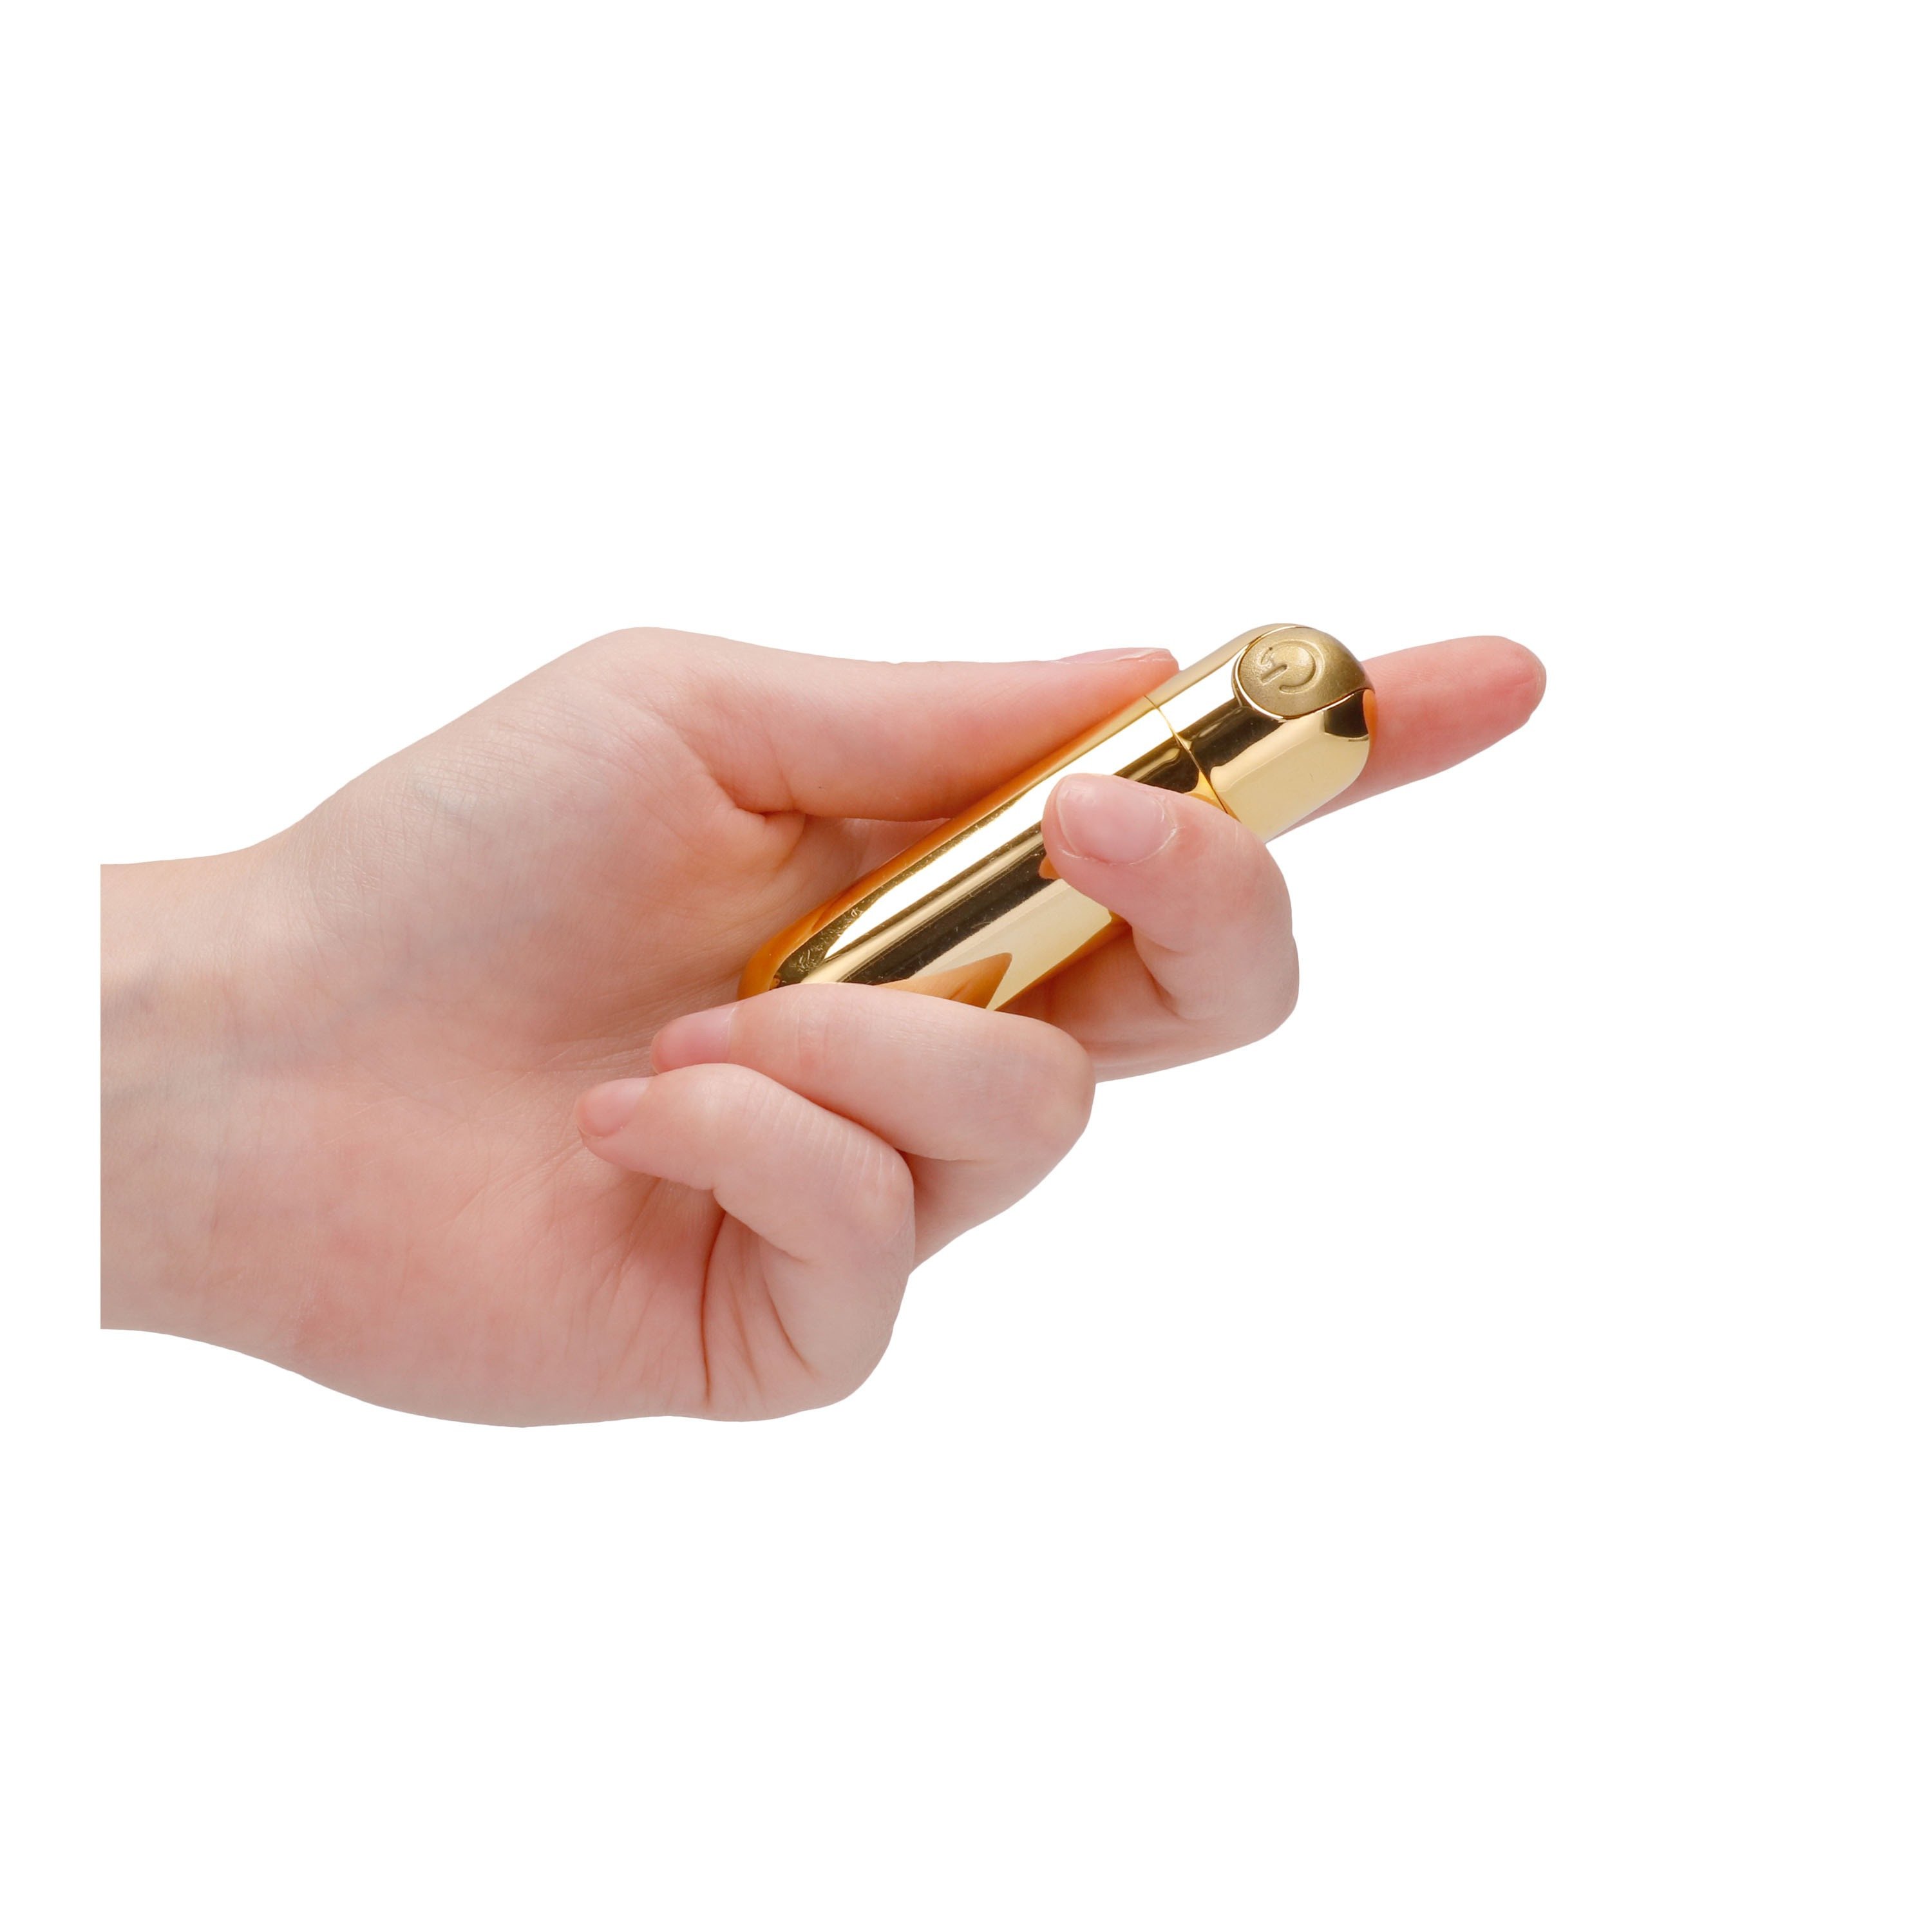 Vibruojanti kulka „10 Speed Rechargeable Bullet“ - Shots Toys